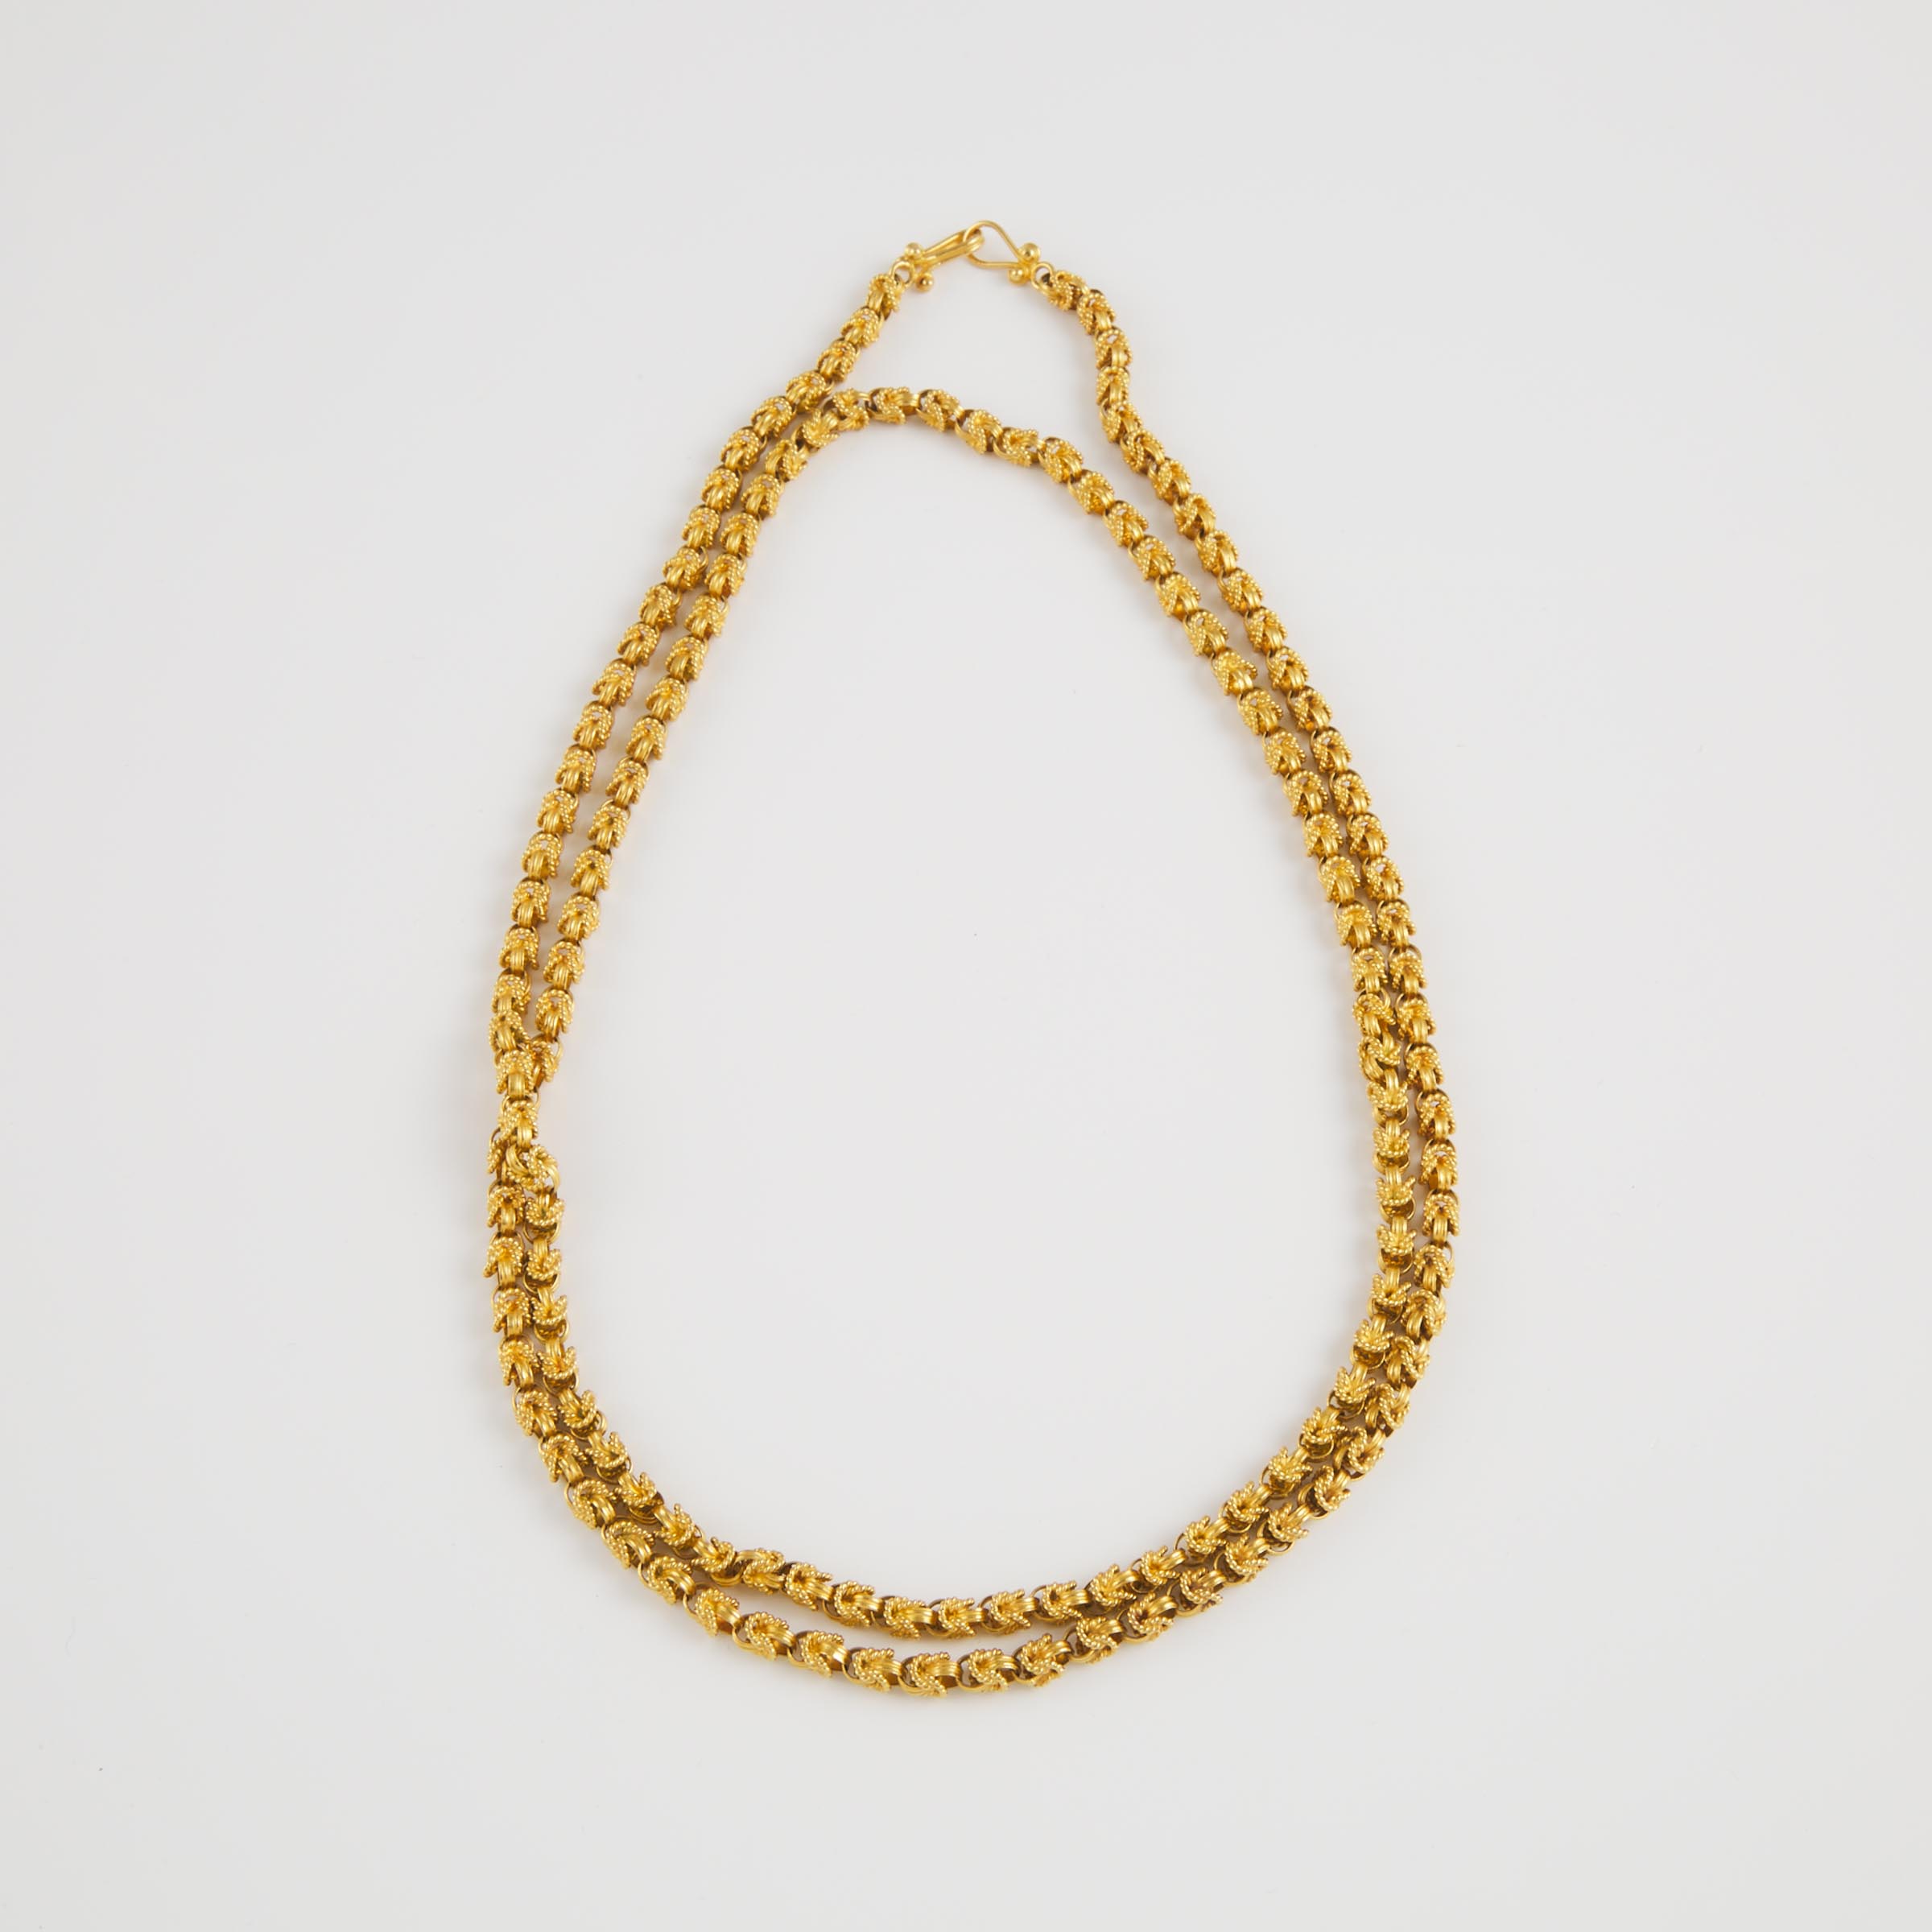 Ornate Handmade 18k Yellow Gold Chain